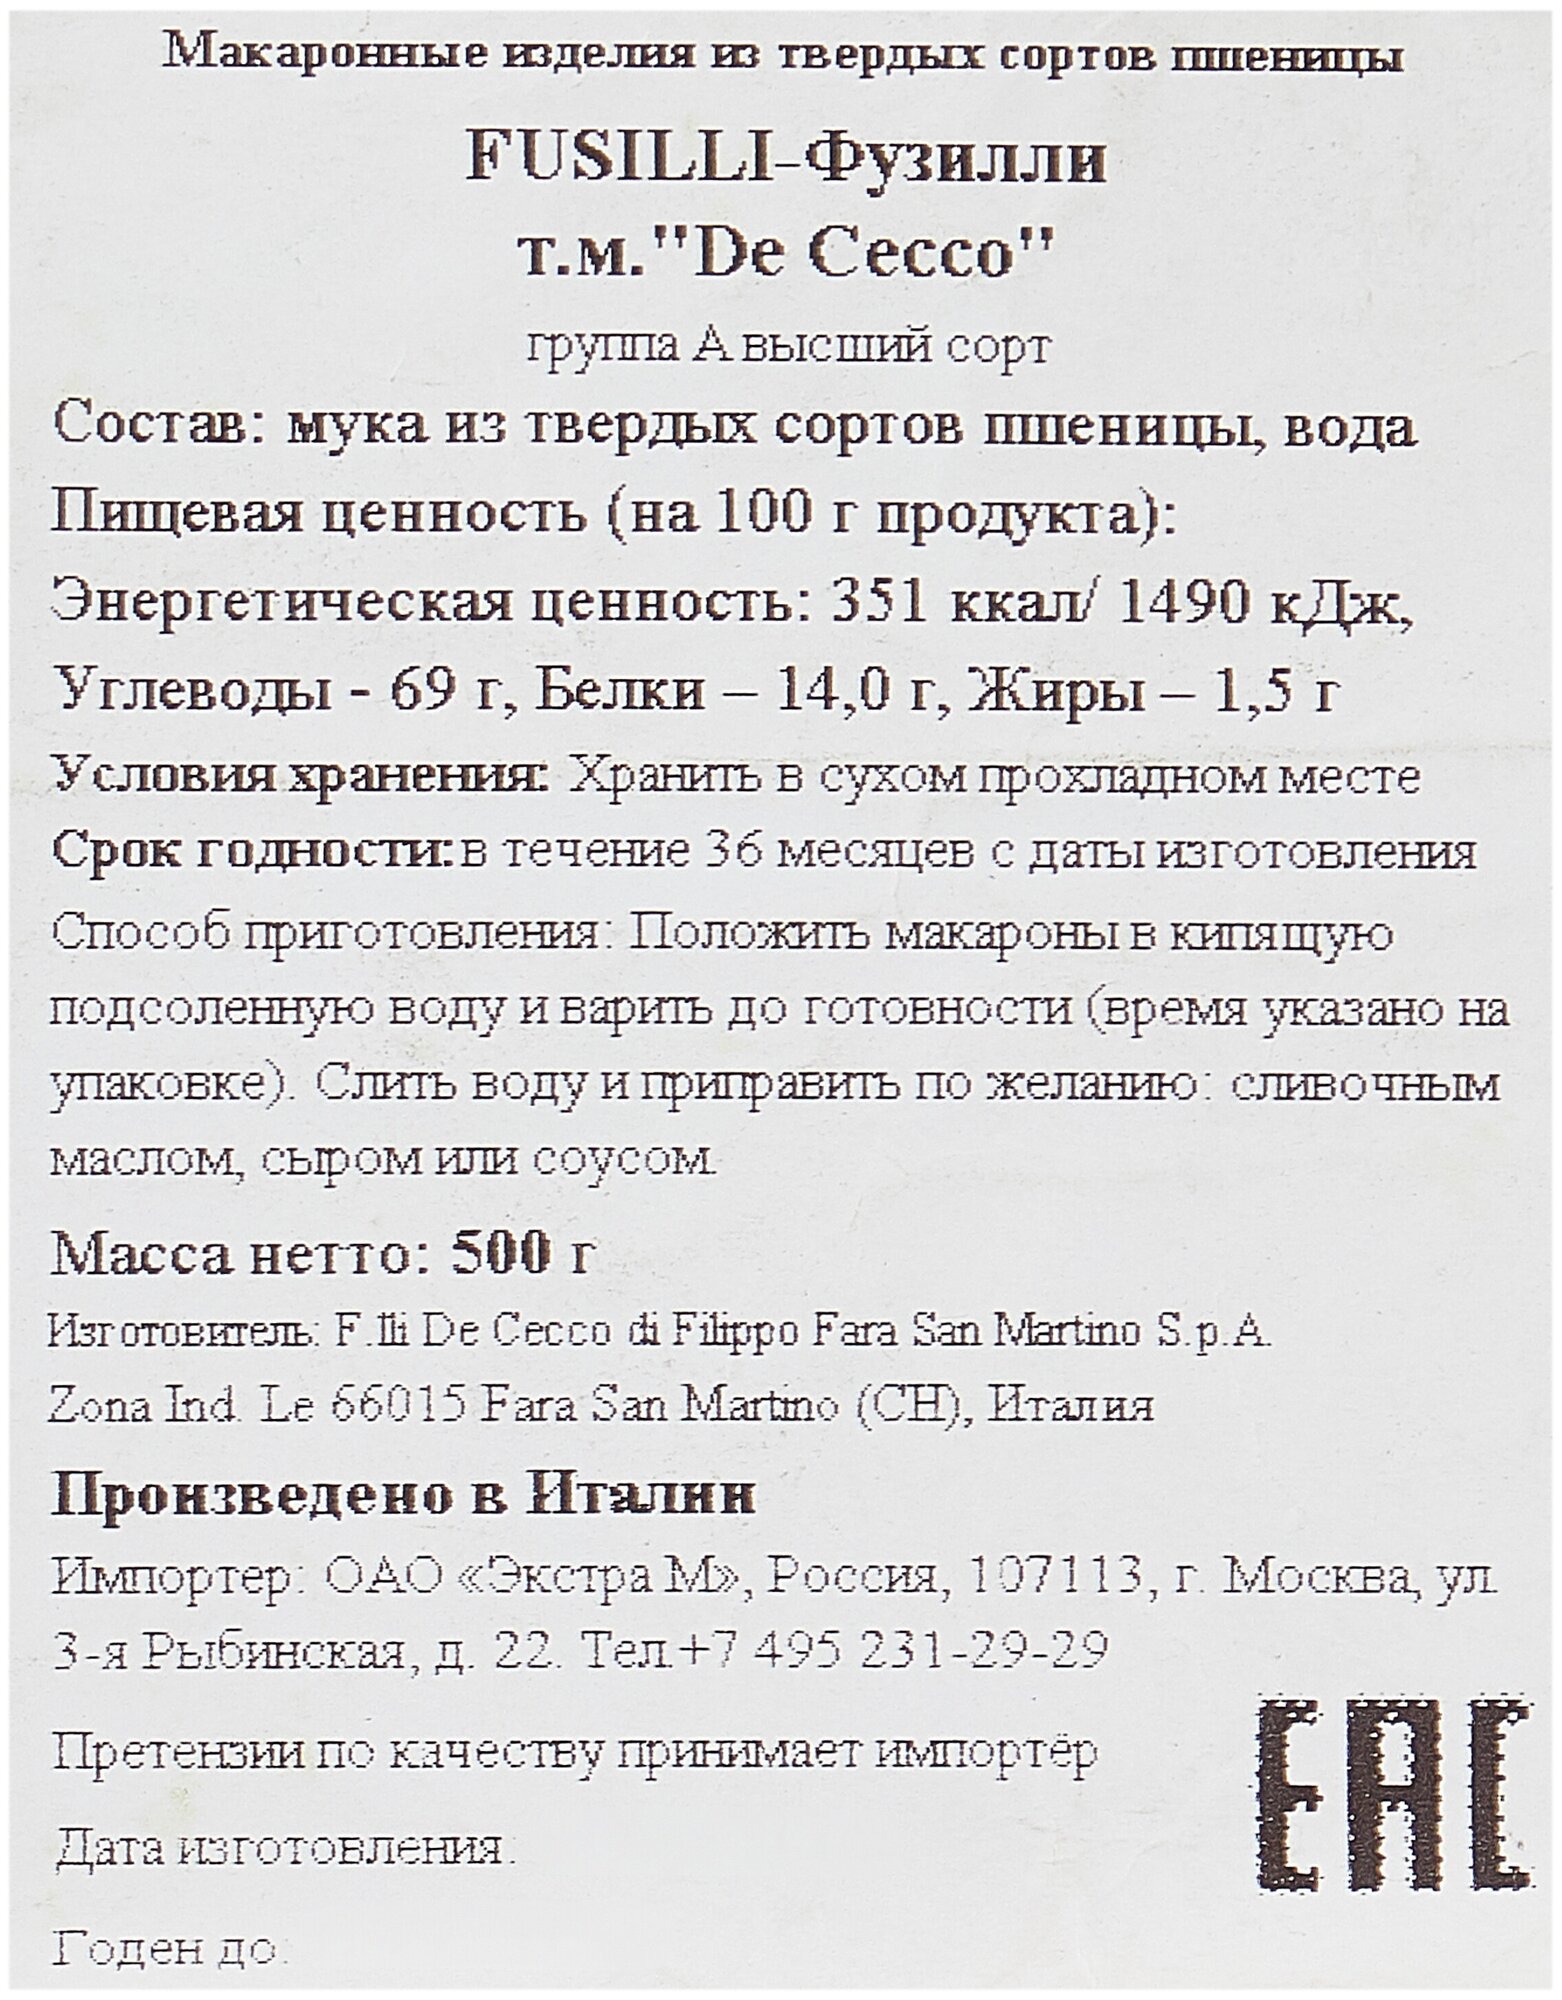 Макароны Фусили-34 De Cecco, 500 г